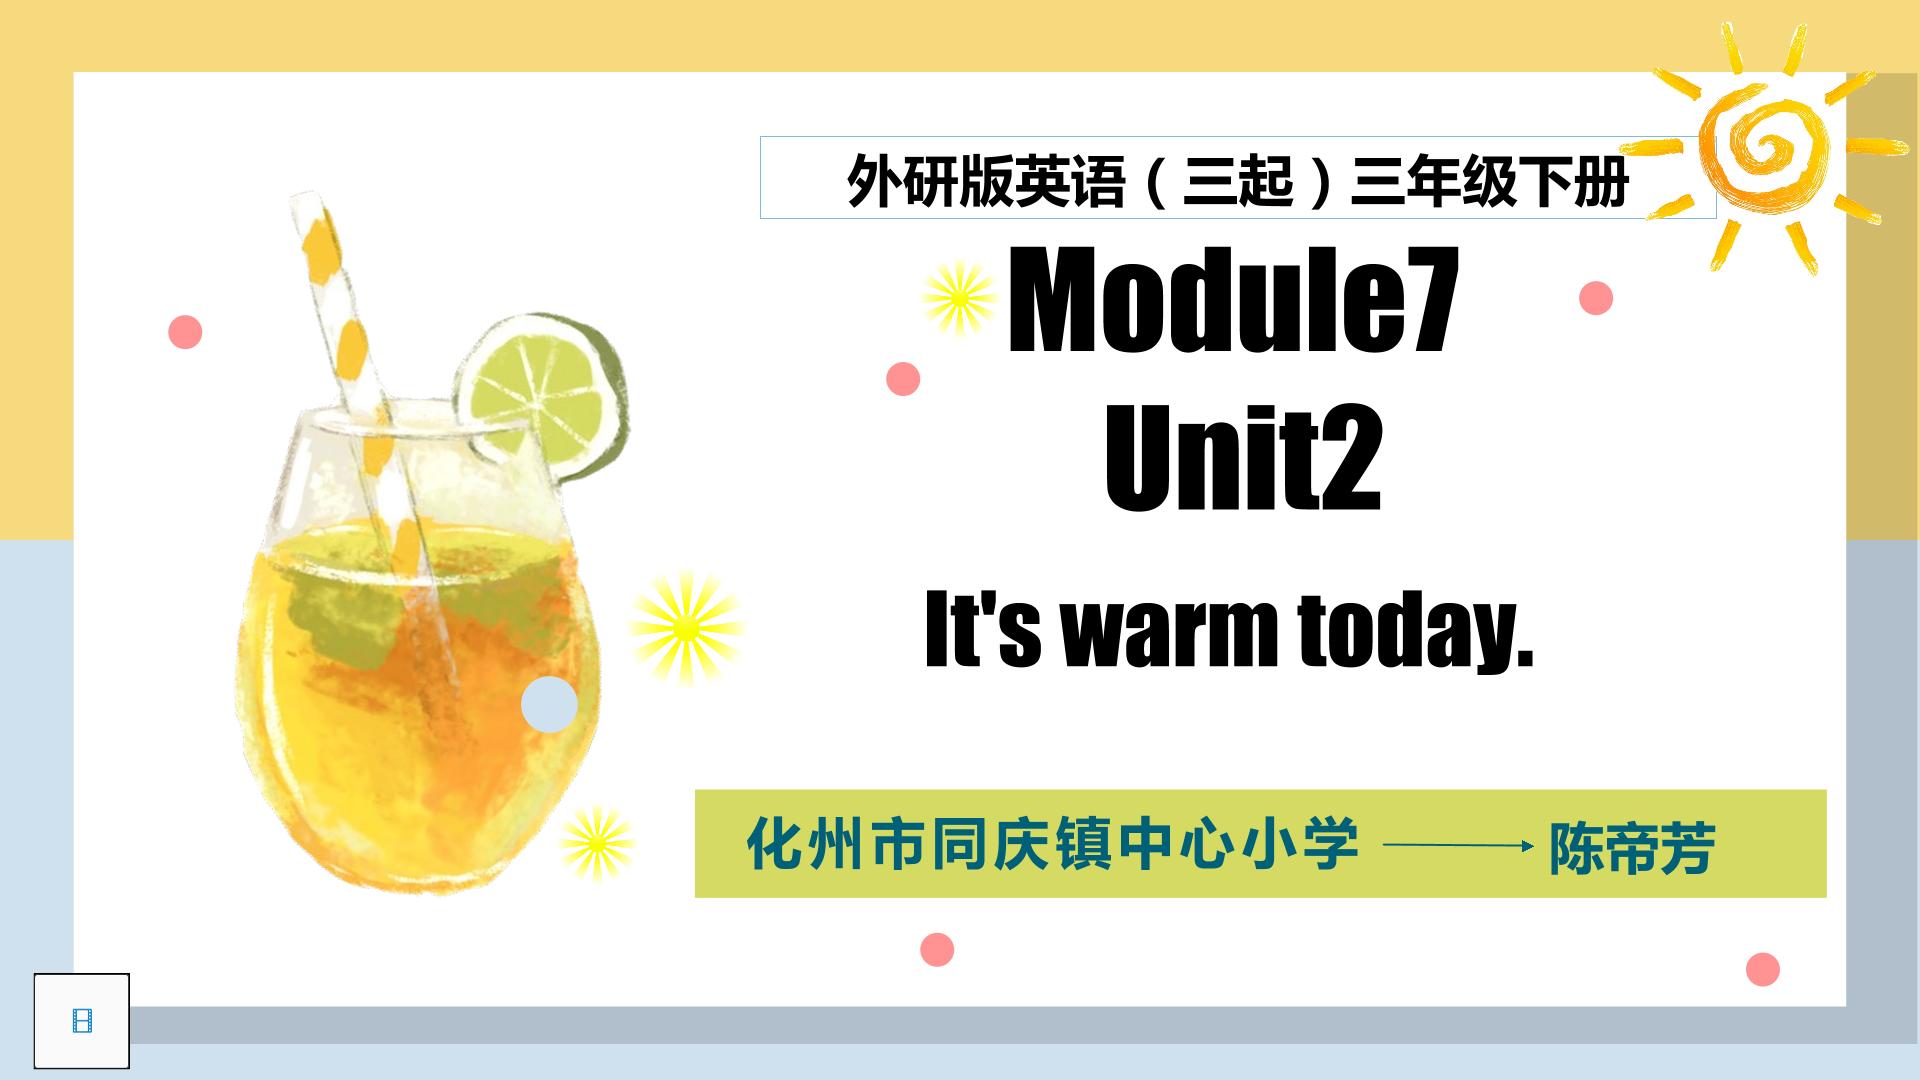 Module 7 Unit 2 It's warm today.